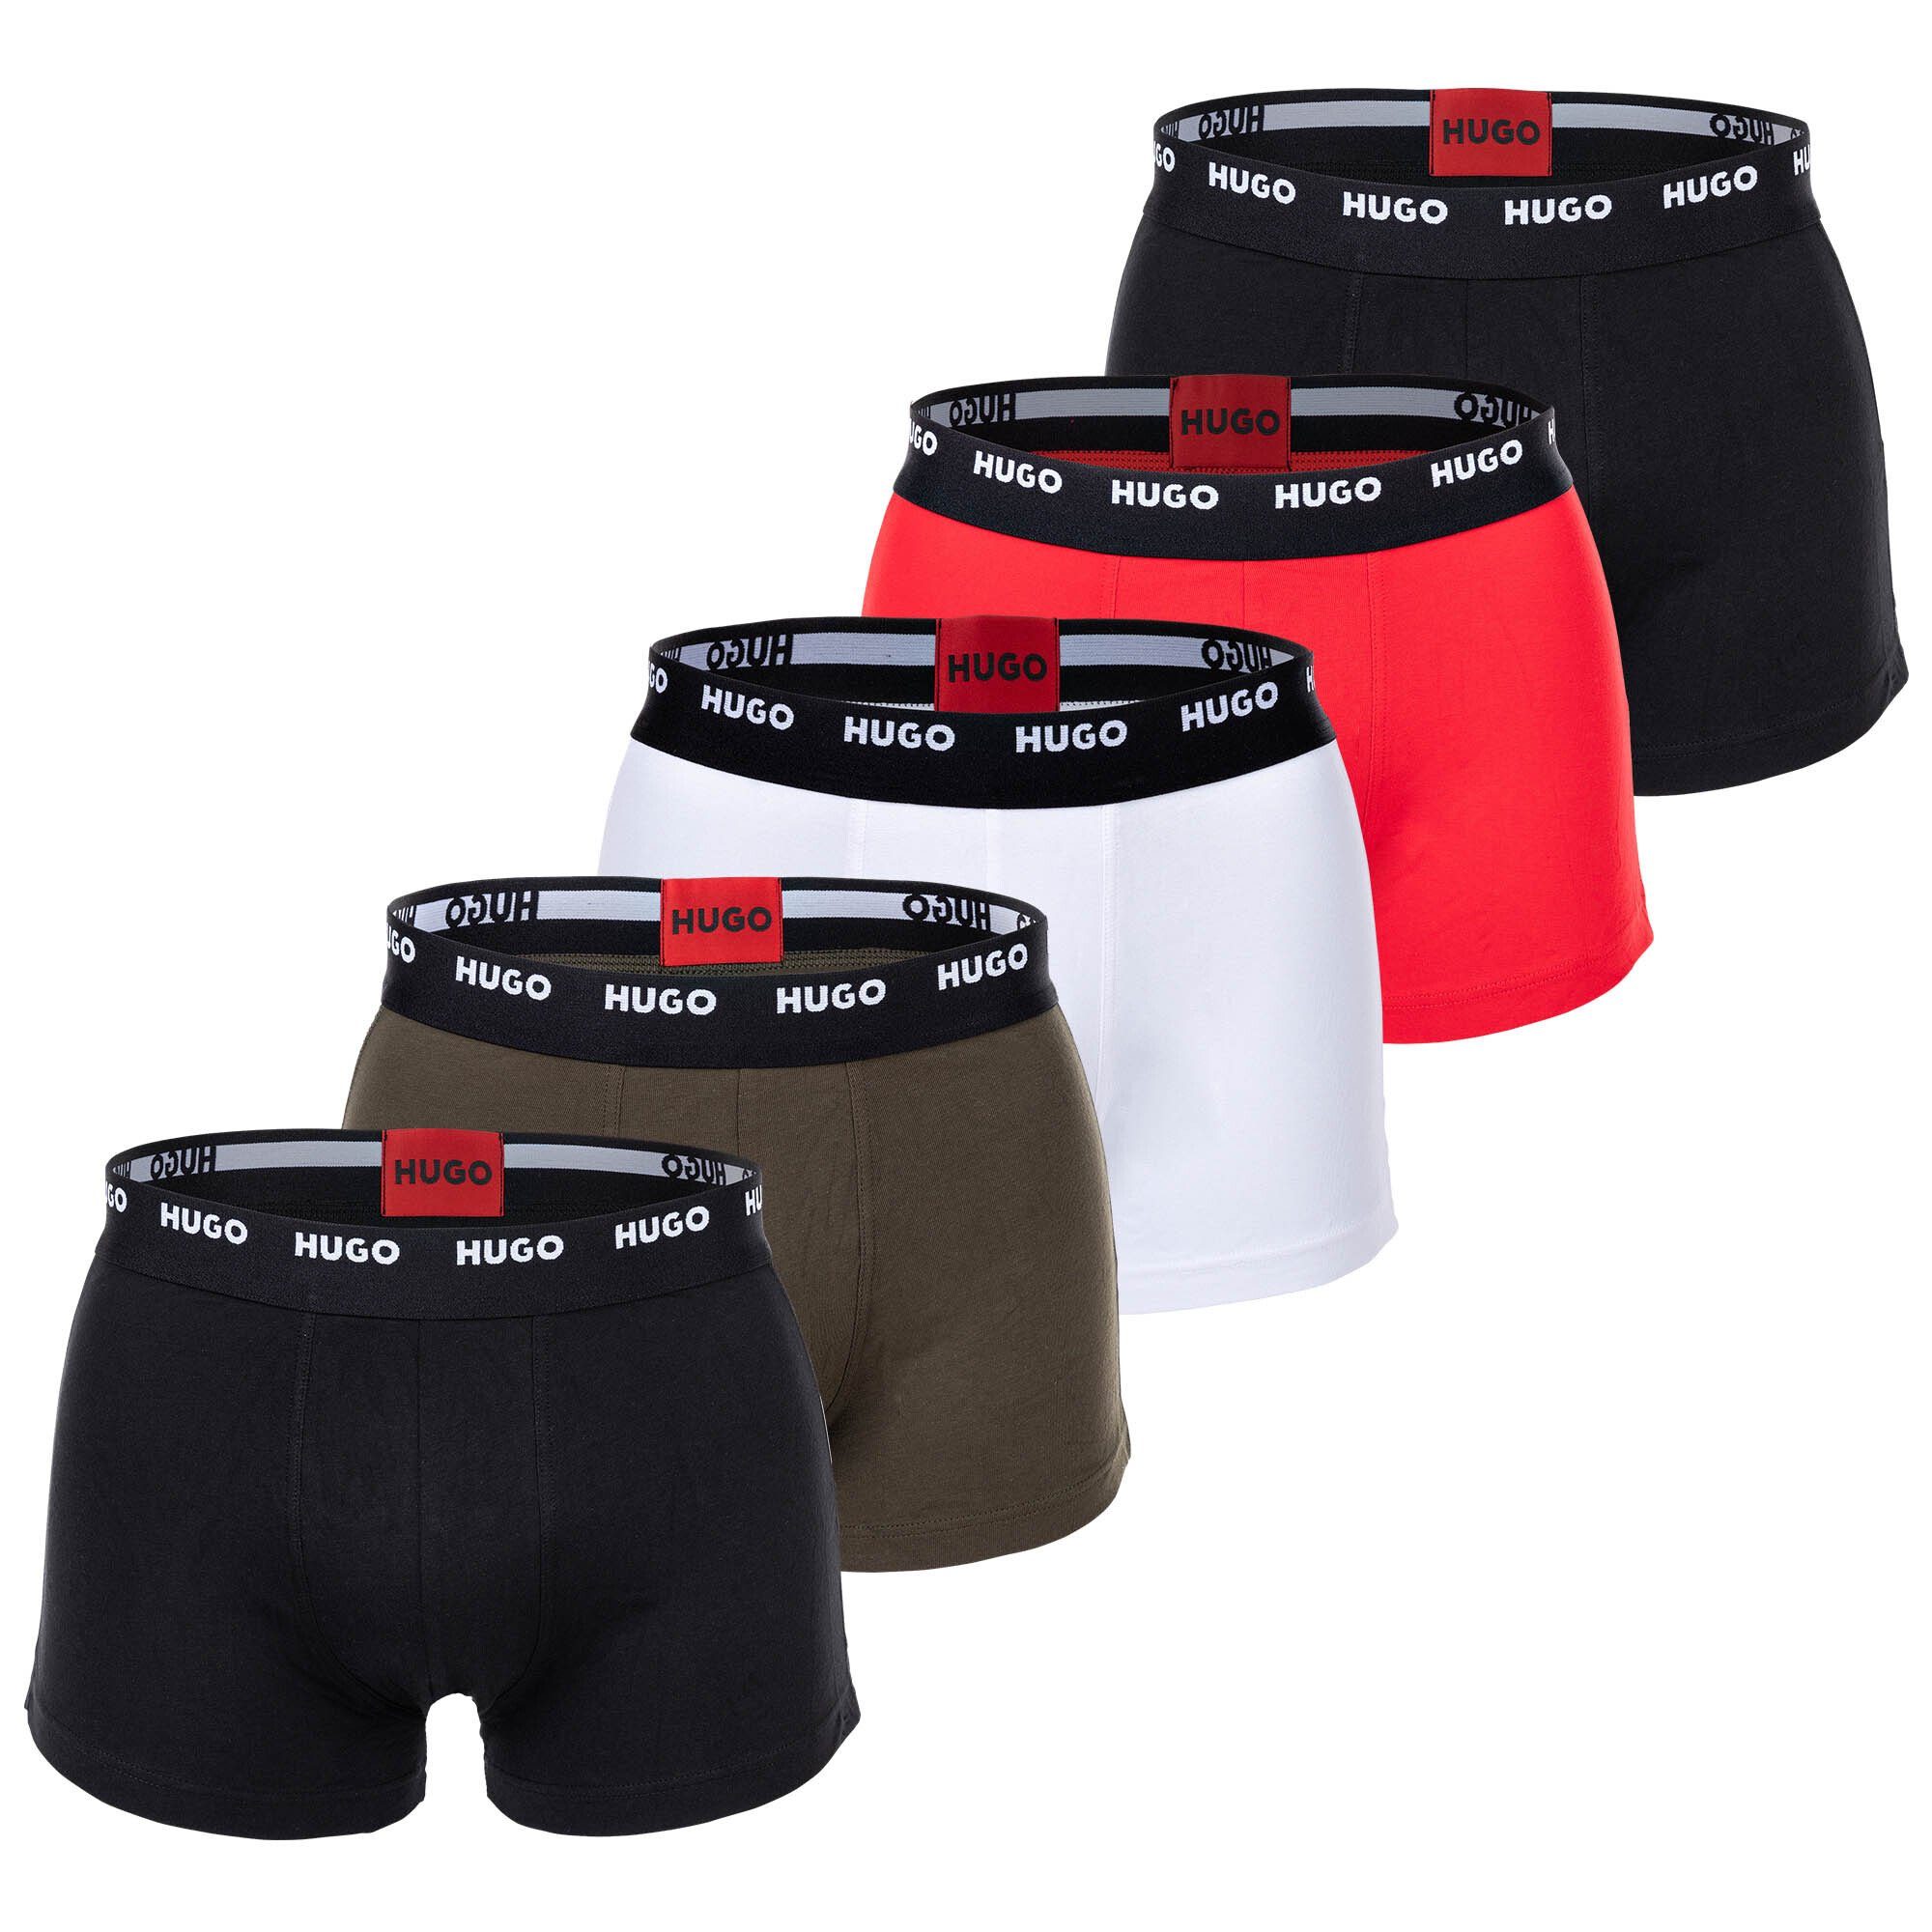 HUGO Boxer Herren Boxer Shorts, 5er Pack - Trunks Five Pack Schwarz/Grün/Rot